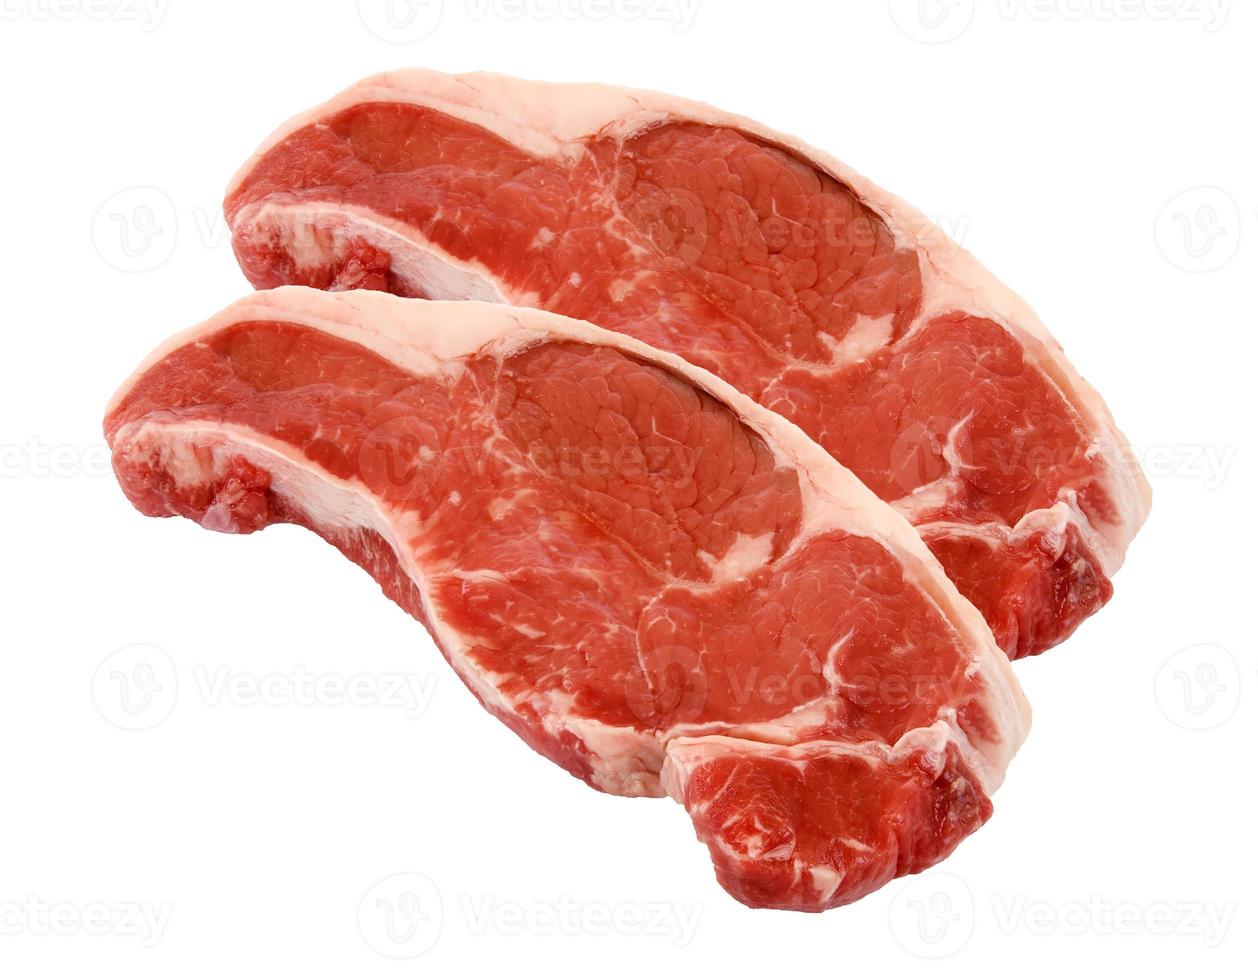 rohes Fleisch Rindfleisch, zwei Scheiben isoliert auf weißem Hintergrund foto